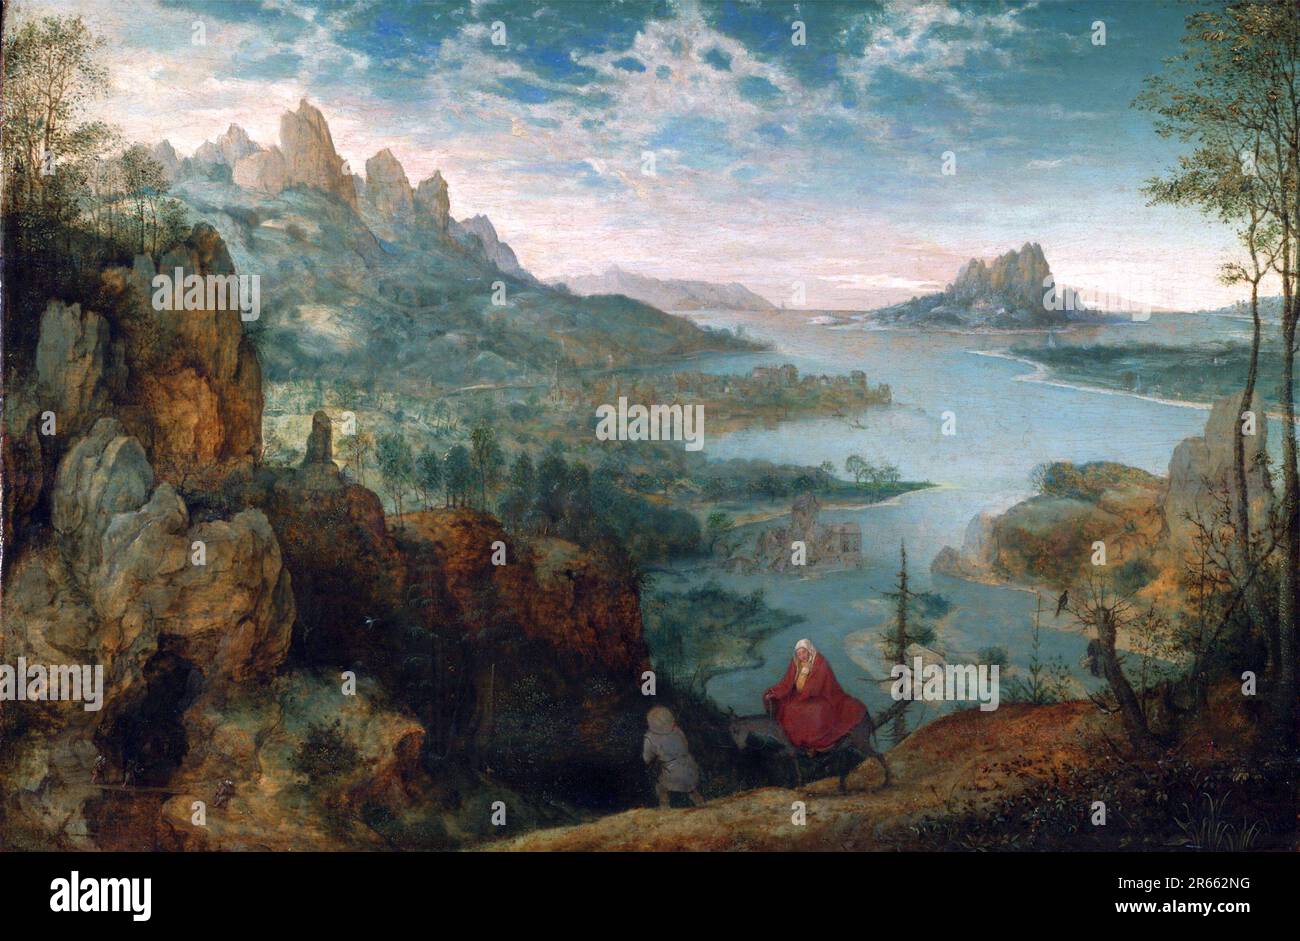 Paysage avec le vol en Egypte peint par le peintre hollandais de la Renaissance Pieter Breughel l'ancien en 1563. Breughel était le peintre le plus important de la Renaissance hollandaise et flamande. Son choix de sujets a été influent, il a rejeté les portraits et les scènes religieuses en faveur des scènes locales et paysannes. Banque D'Images